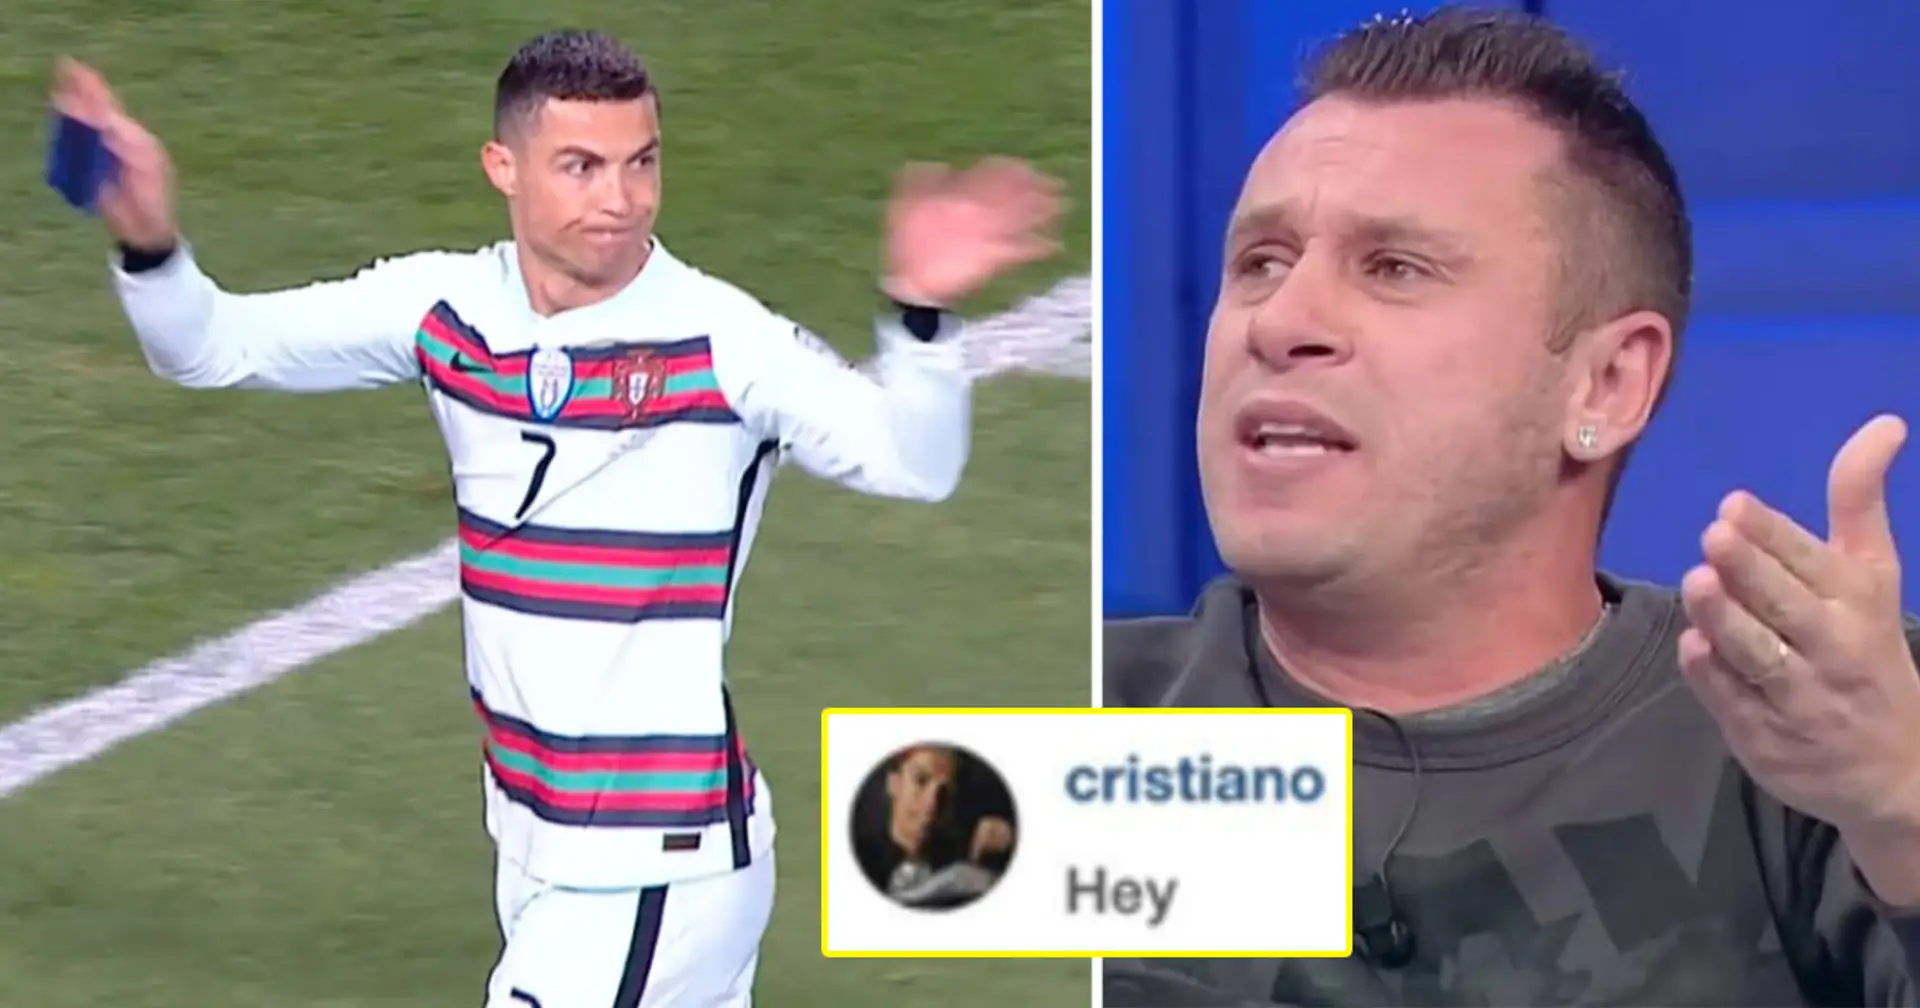 "Je dirais simplement, soyez comme Messi": Cassano révèle que Ronaldo lui a écrit des messages forts demandant le respect